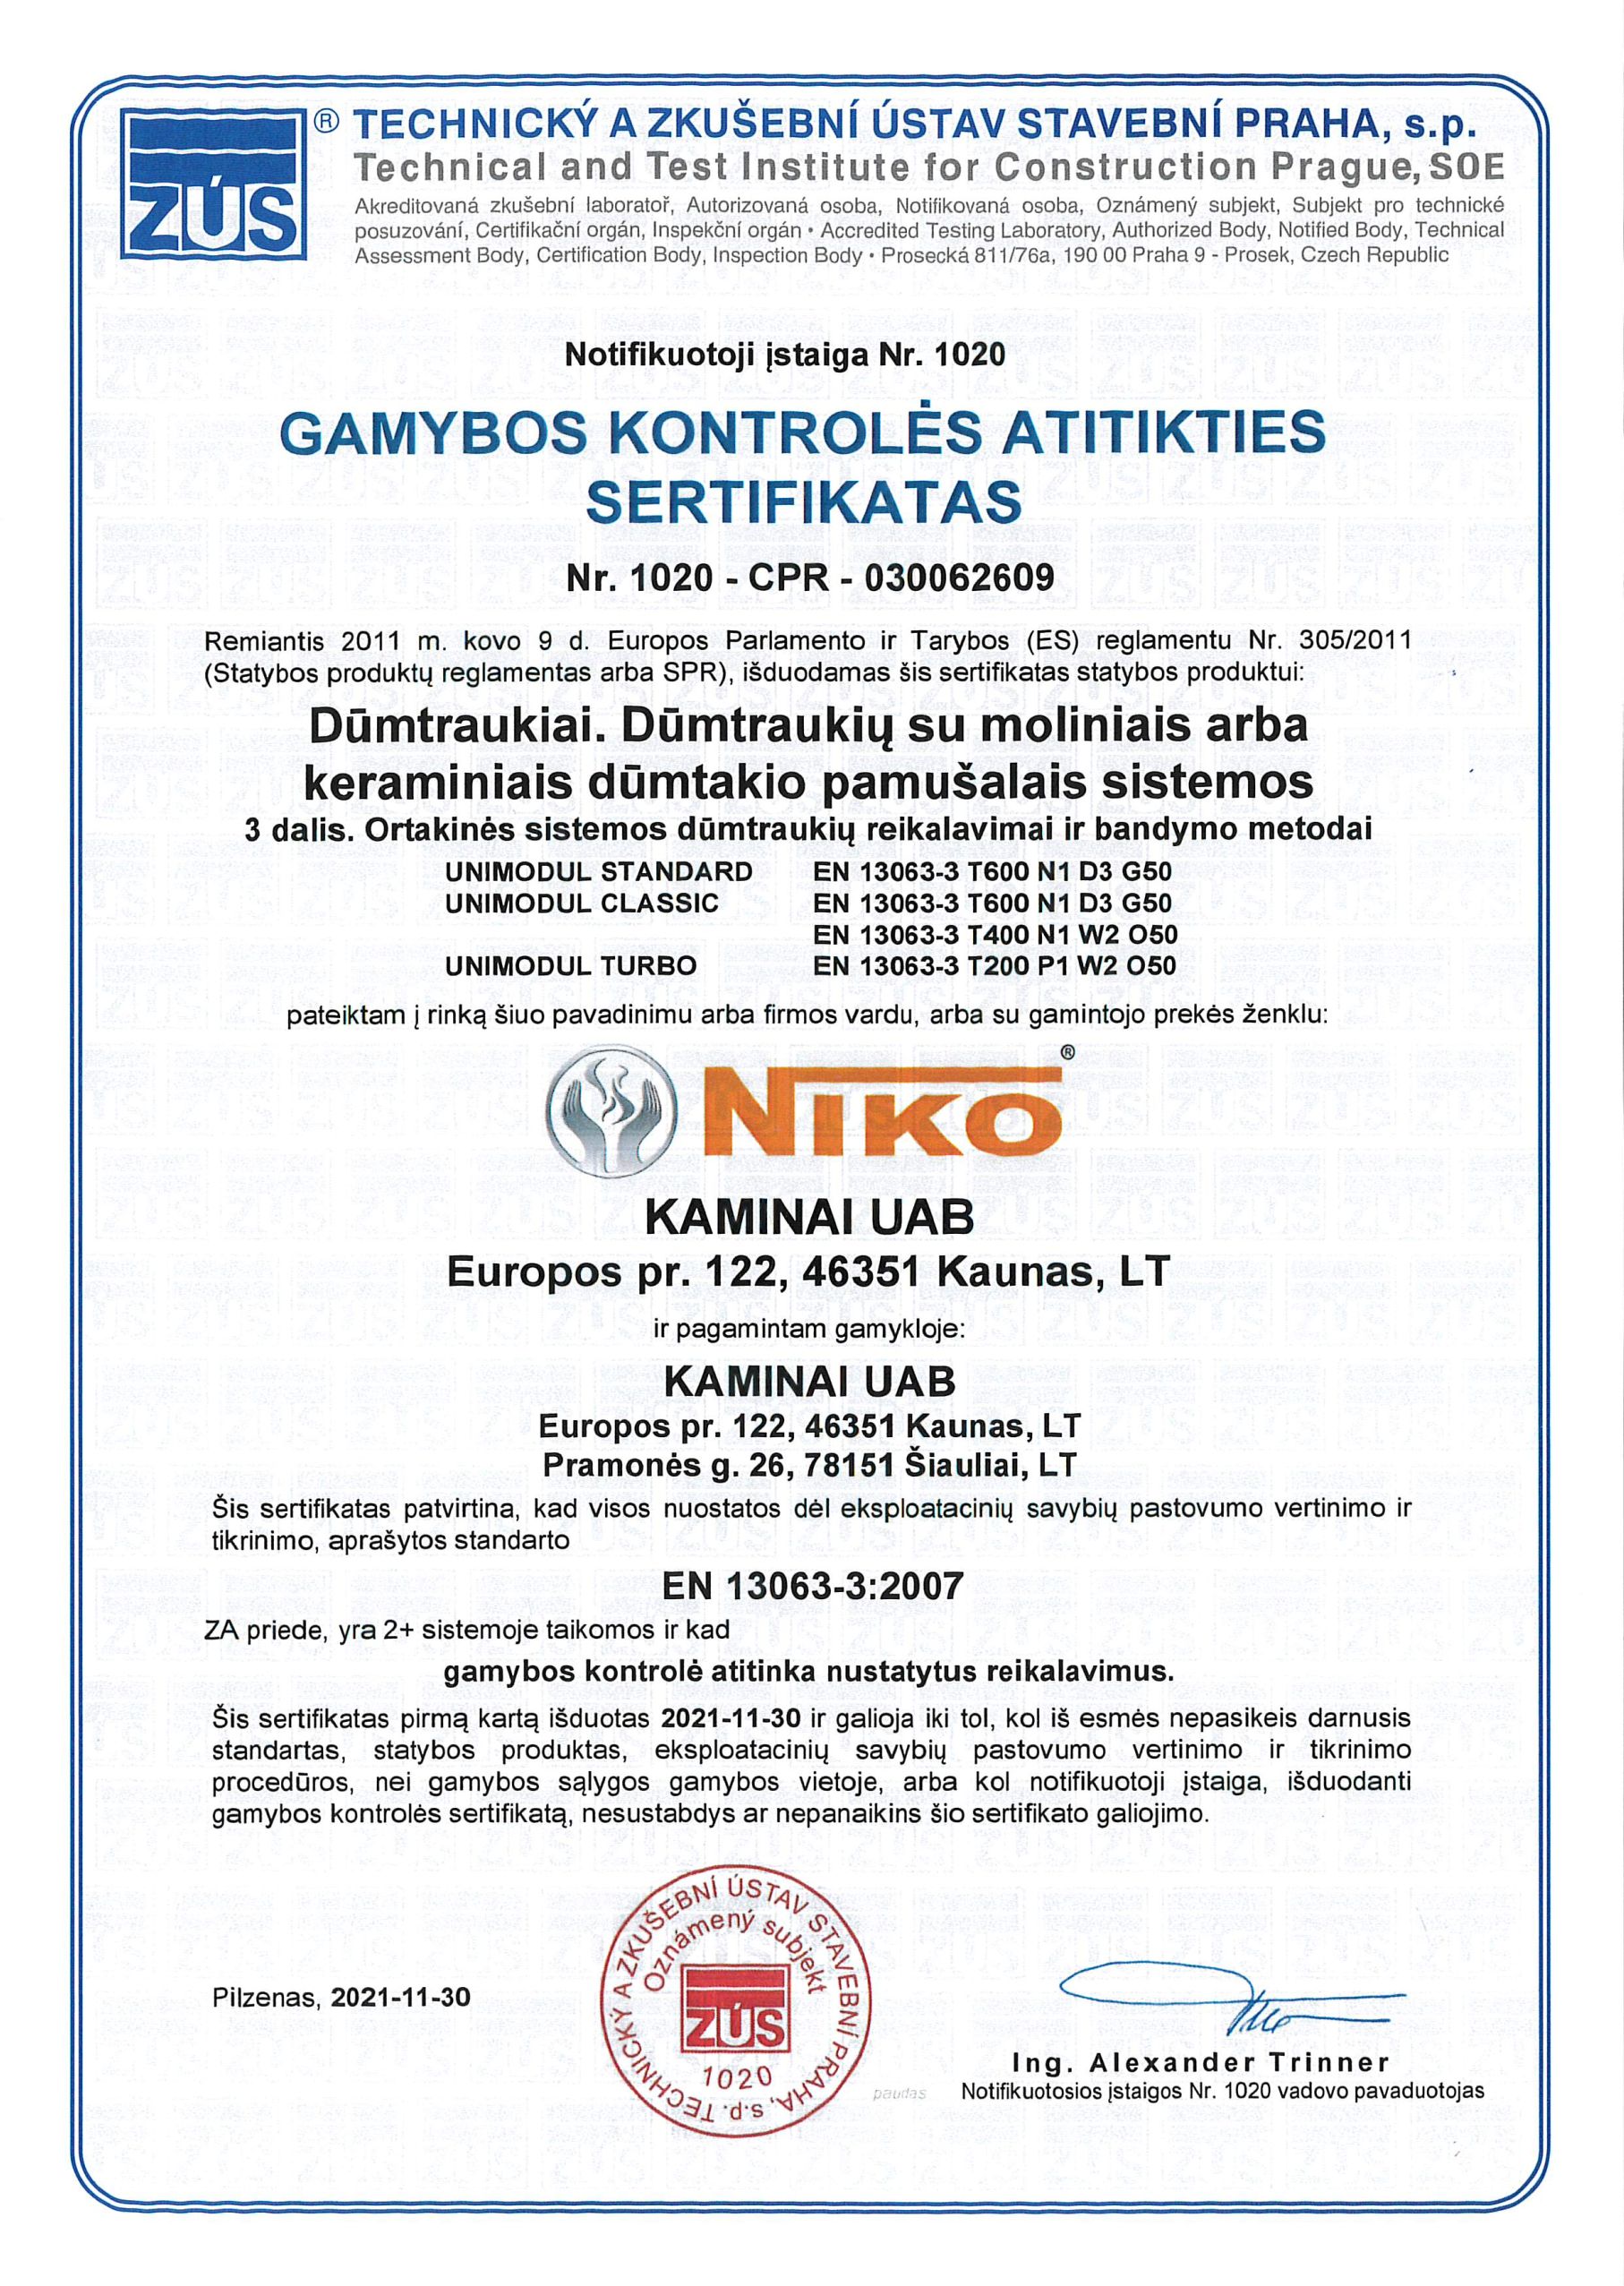 sertifikatas-niko